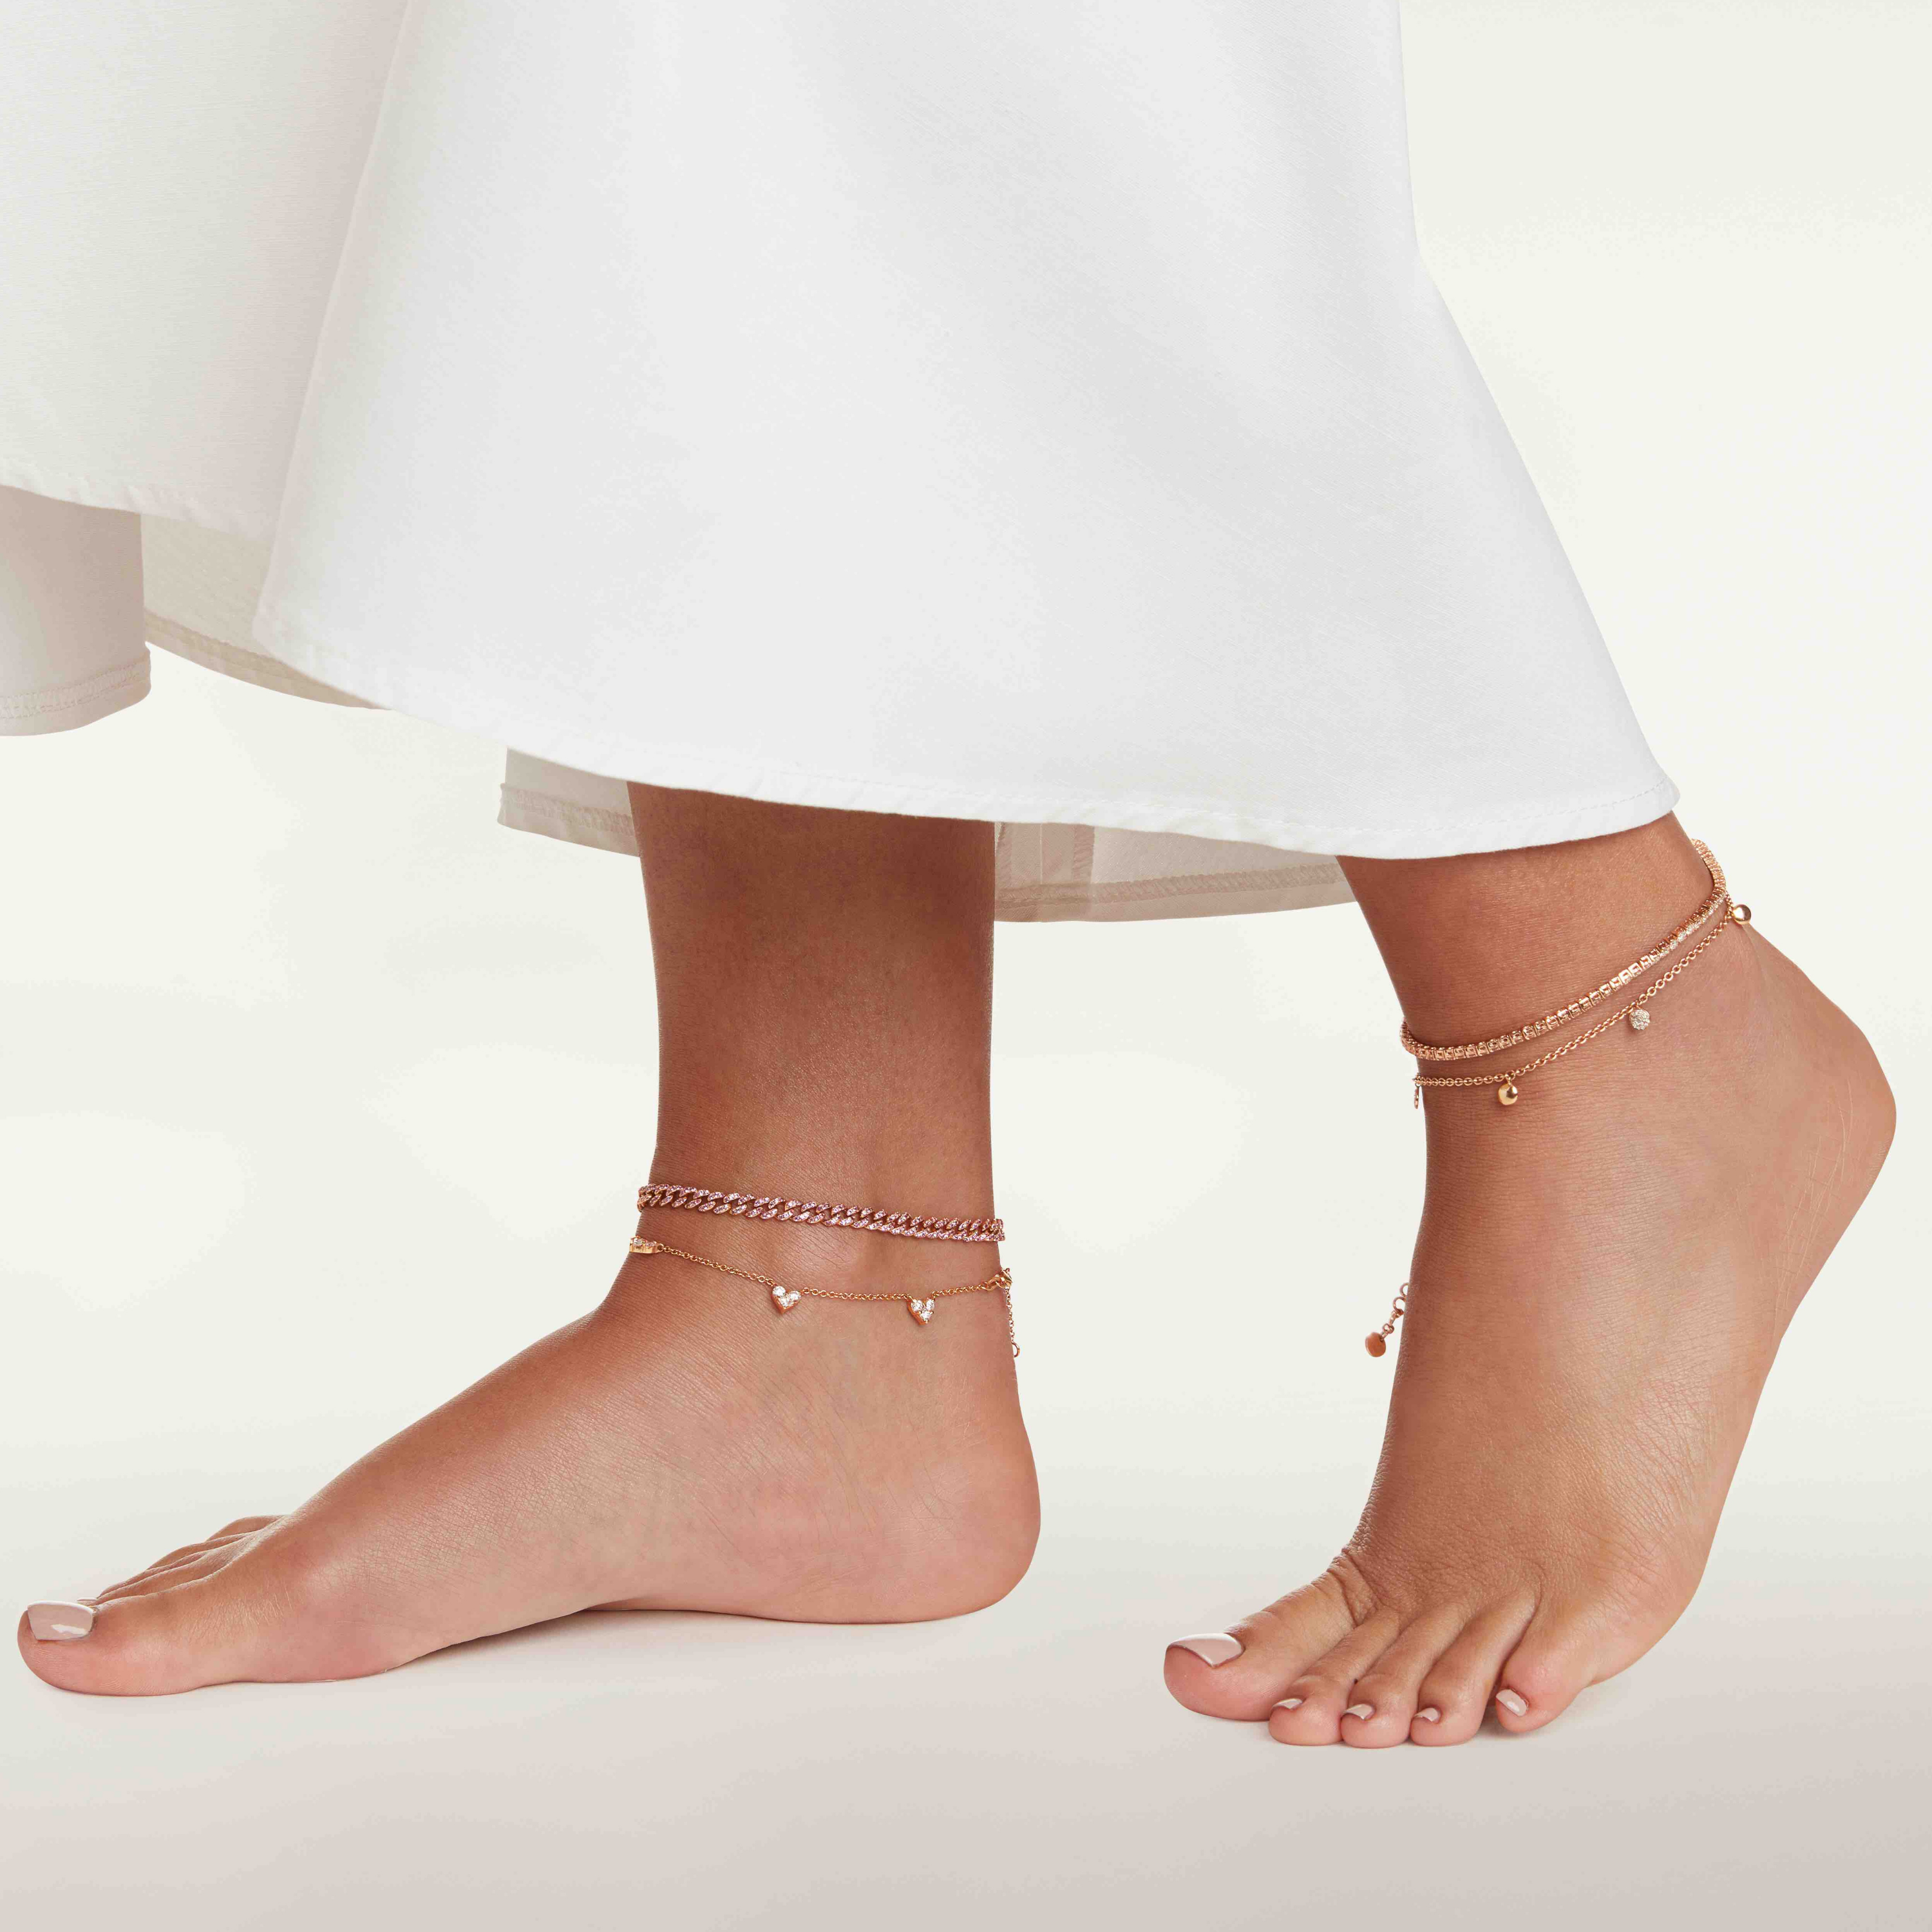 Rose Gold Anklet - Buy Rose Gold Anklet Online in India